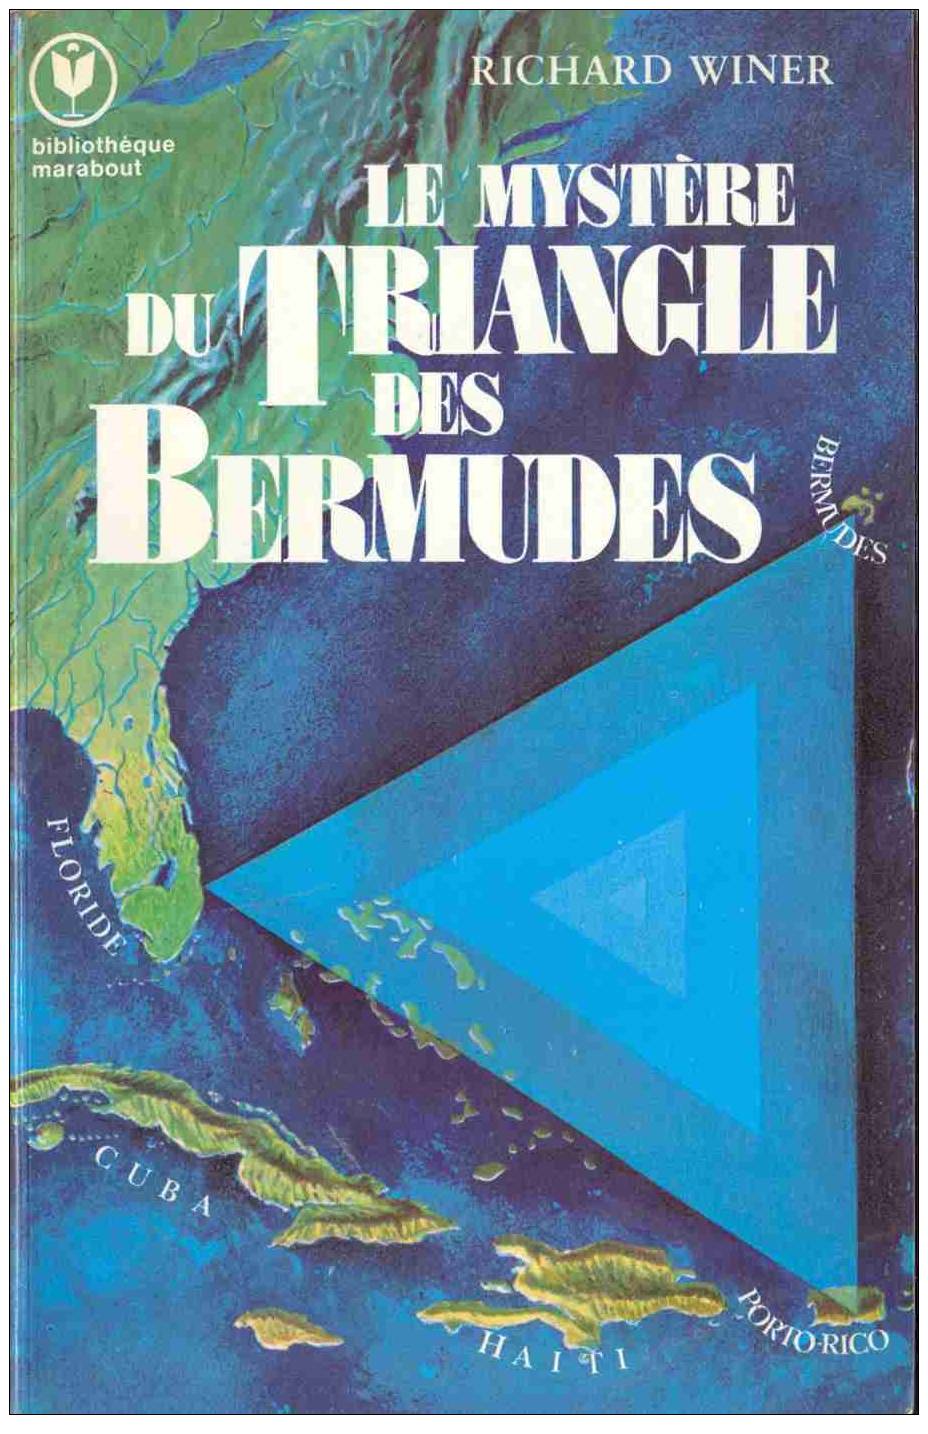 Bibliothèque Marabout 608 - Richard Winer - Le Mystère Du Triangle Des Bermudes - 1976 - TBE - Aventure